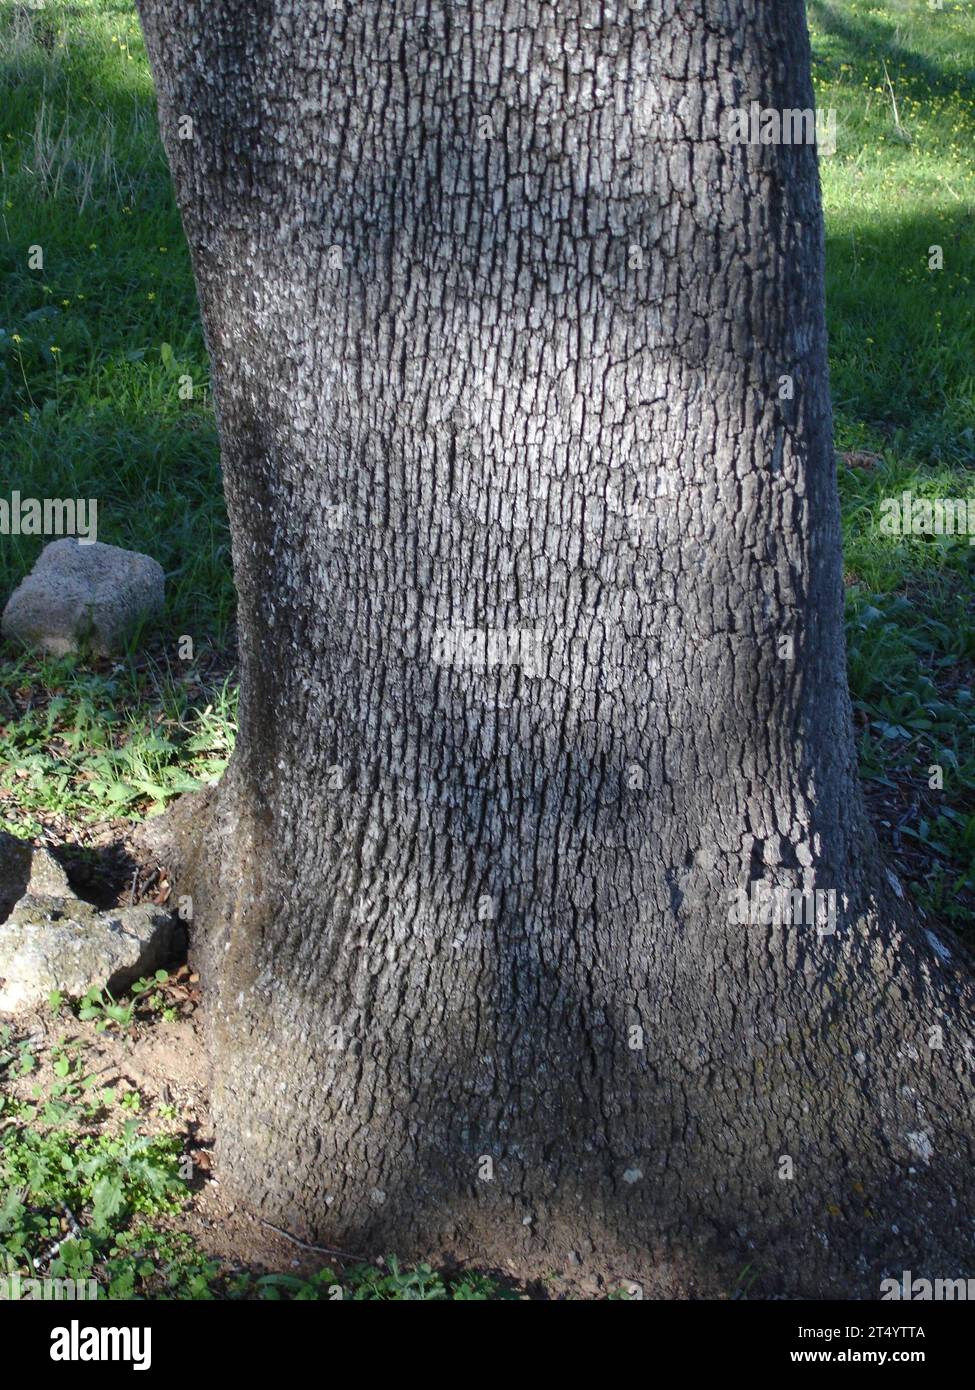 écorce d'un arbre, couche externe d'un arbre écorce d'un arbre Banque D'Images